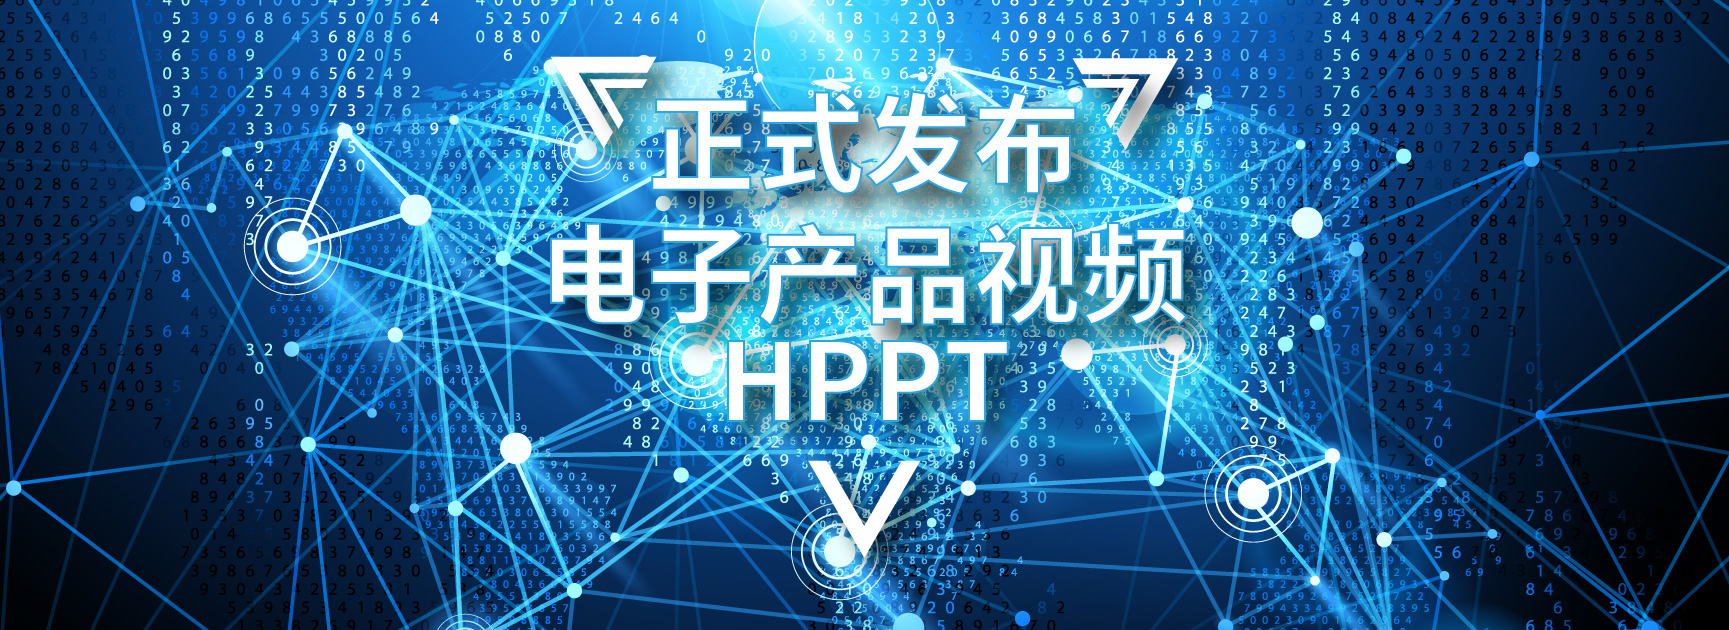 hprt汉印电子产品视频介绍正式发布